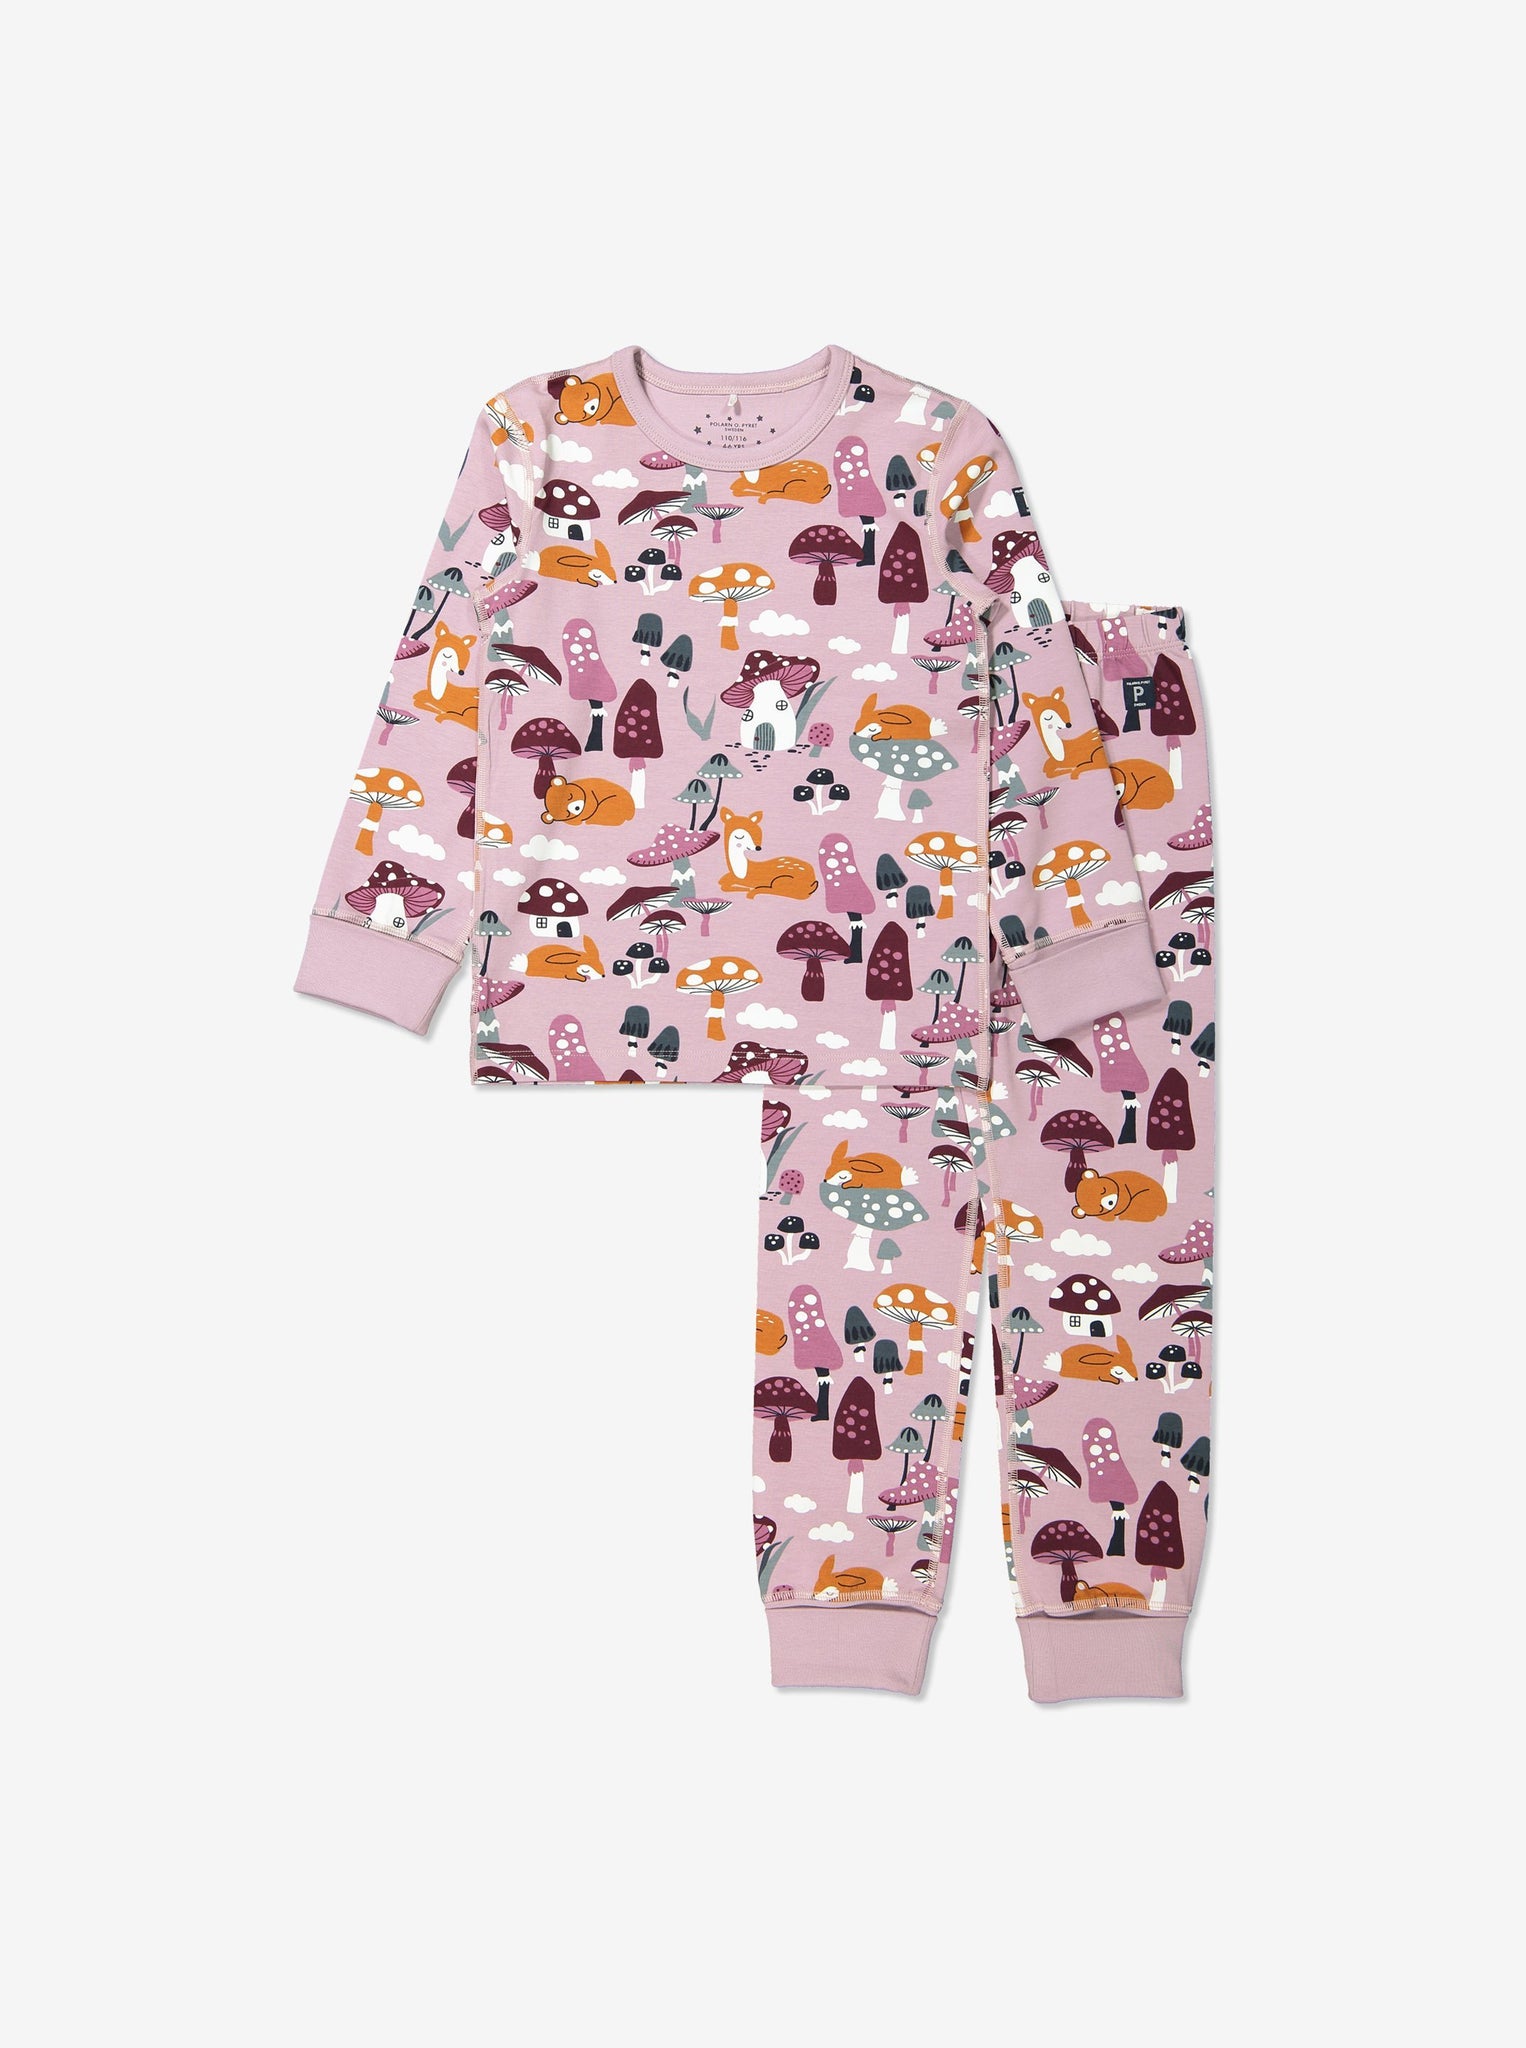 Cozy Unisex Kids Pyjamas, Ethical Kids Clothes| Polarn O. Pyret UK